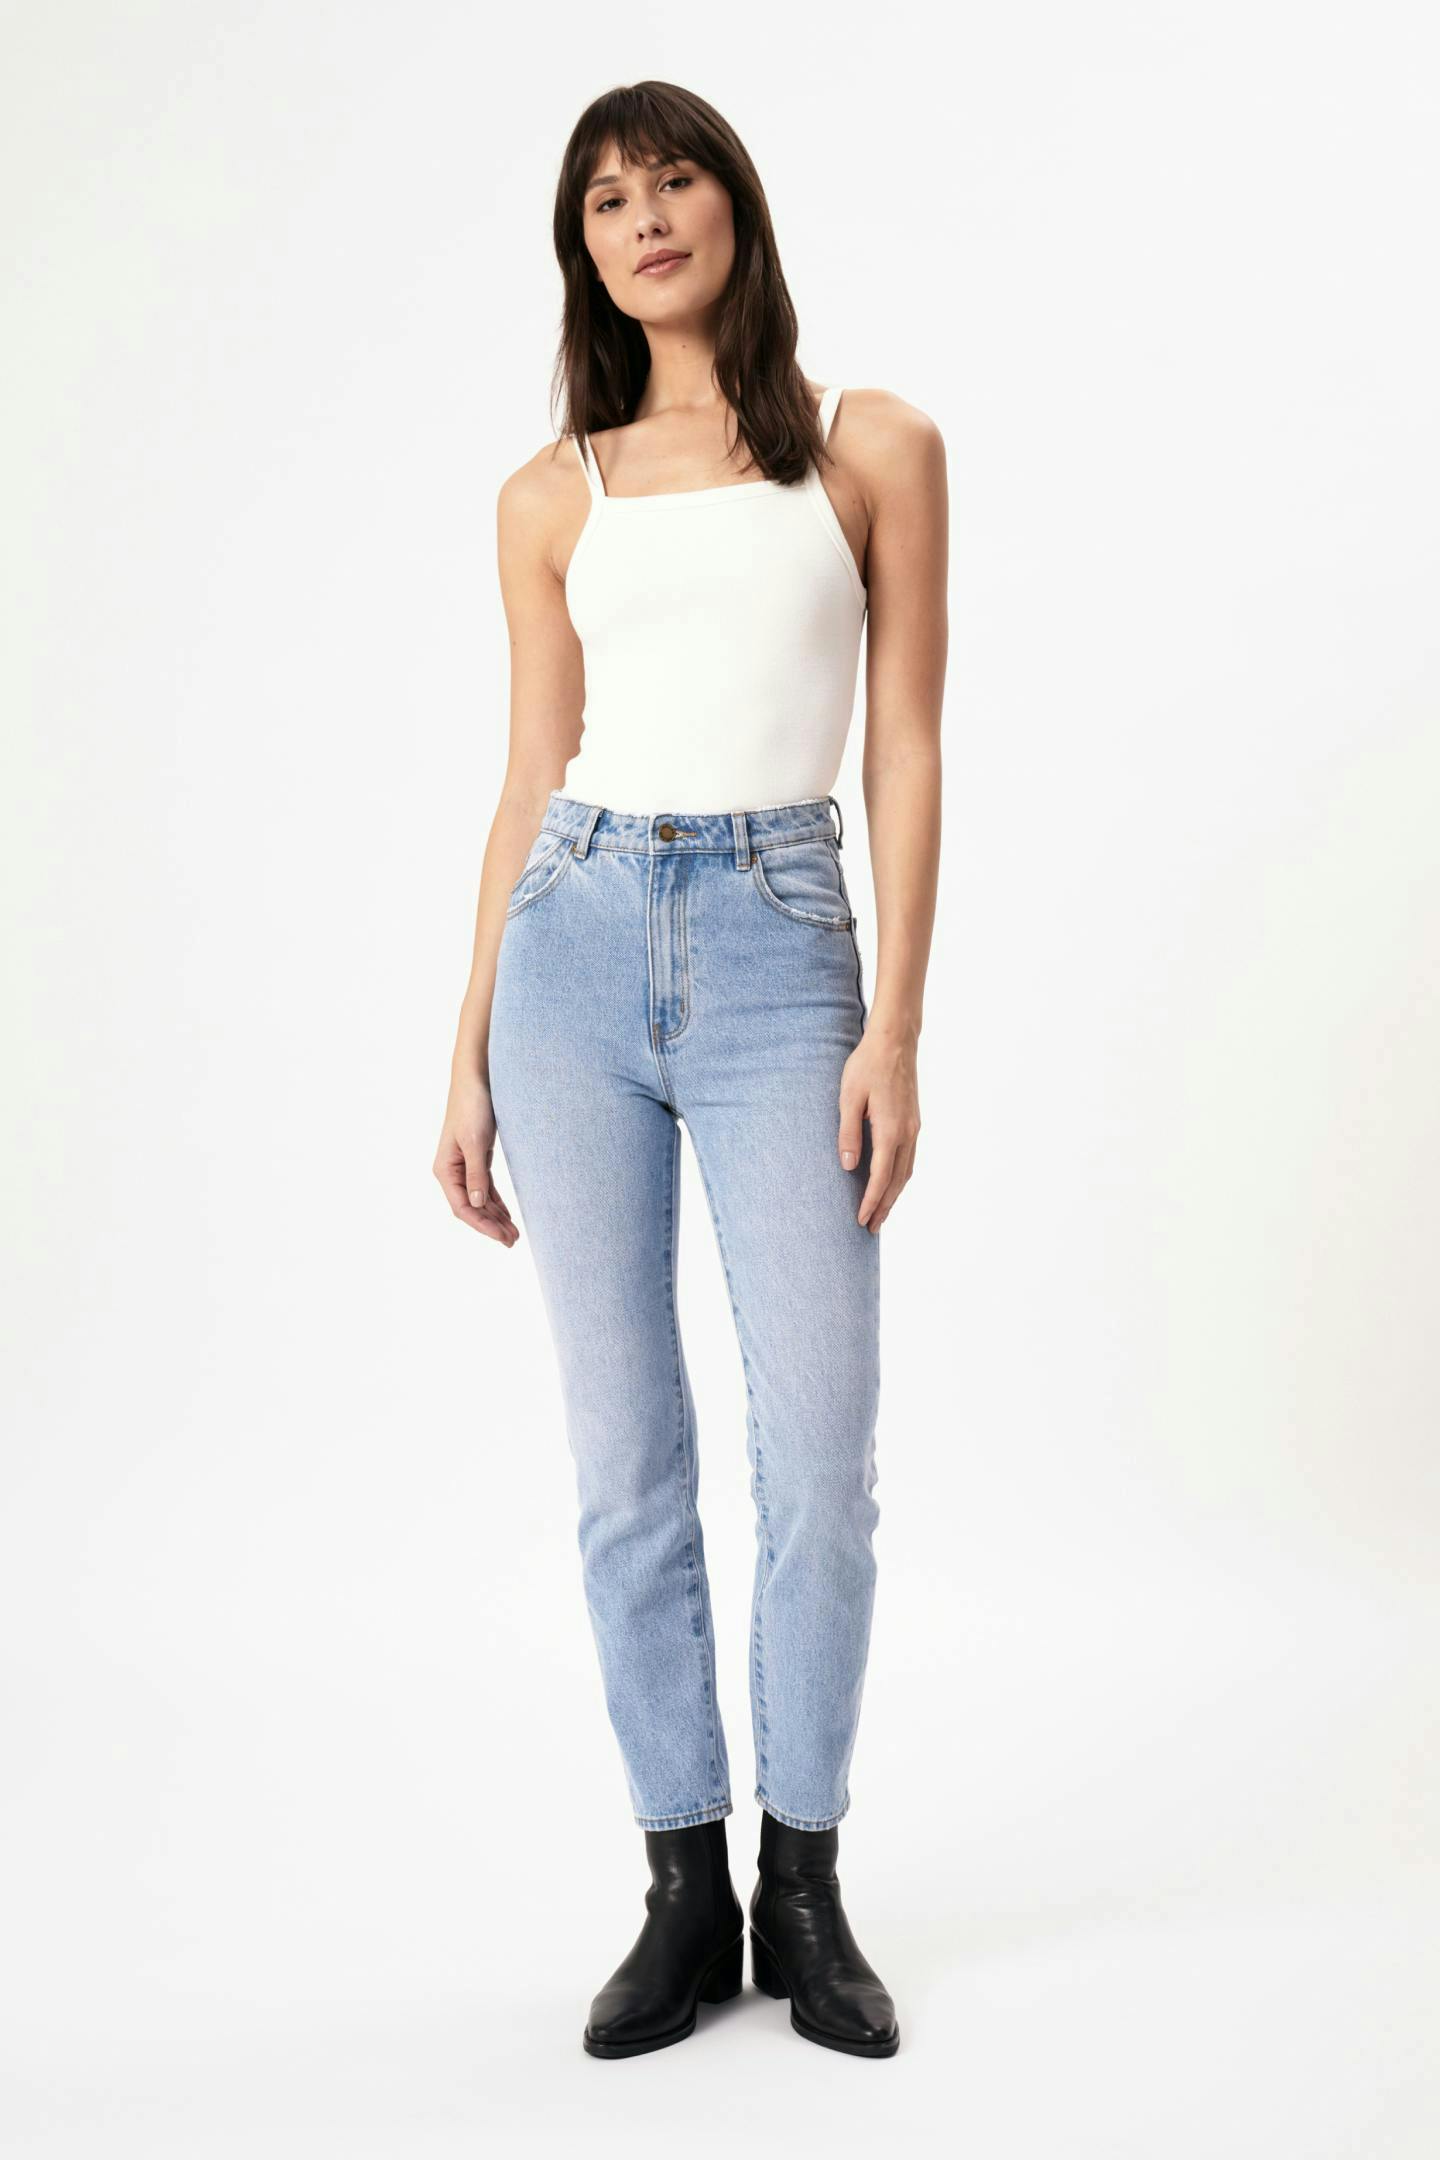 Buy Women's Denim Jeans Online | Rolla's Jeans